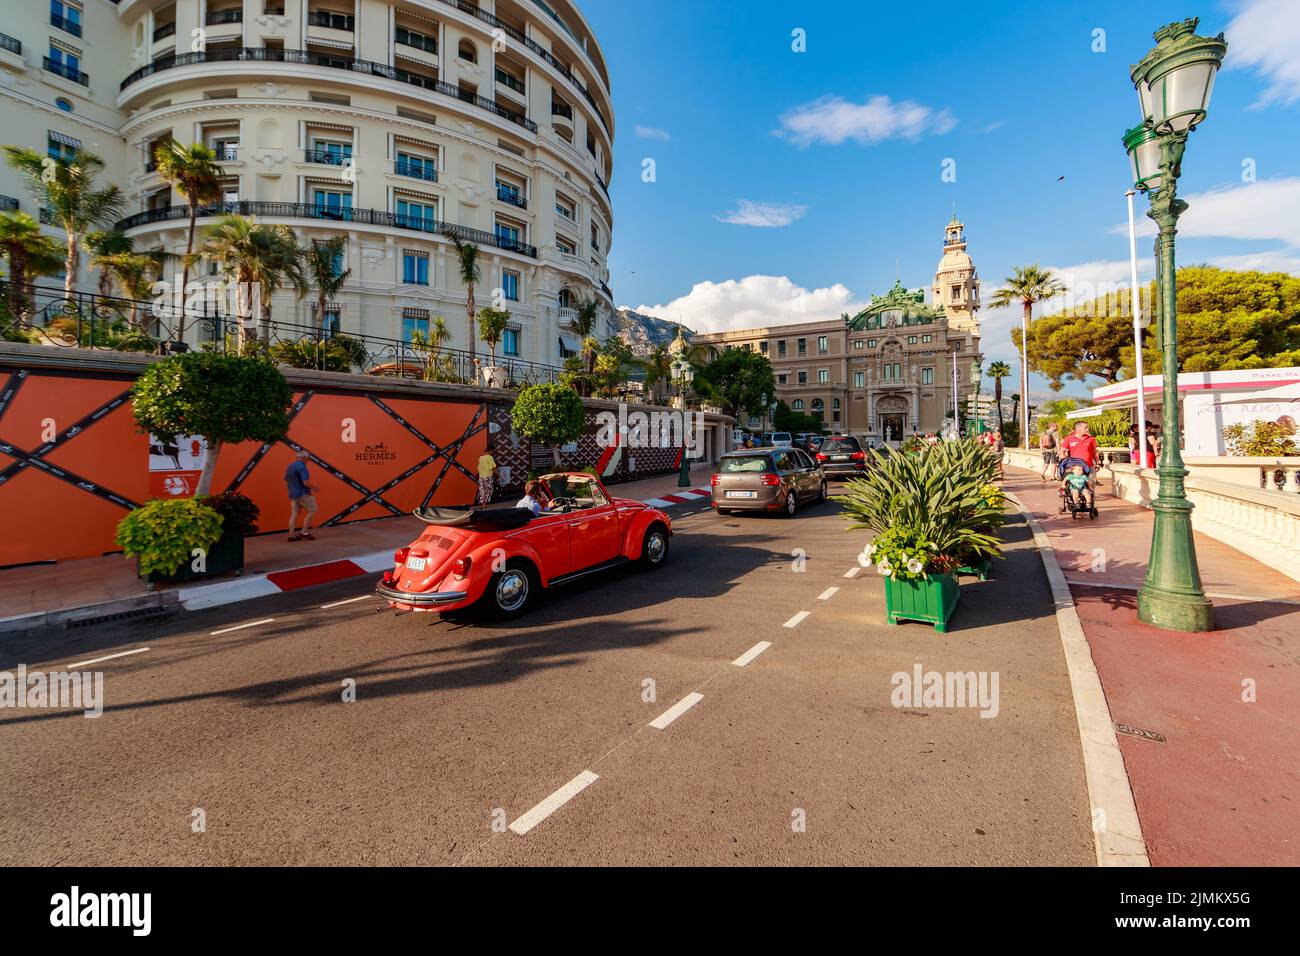 Monaco, Monte-Carlo, 21 août 2017 : les touristes et les riches visitent des boutiques de marque près de l'hôtel Paris et du Casino Monte-Carlo Banque D'Images